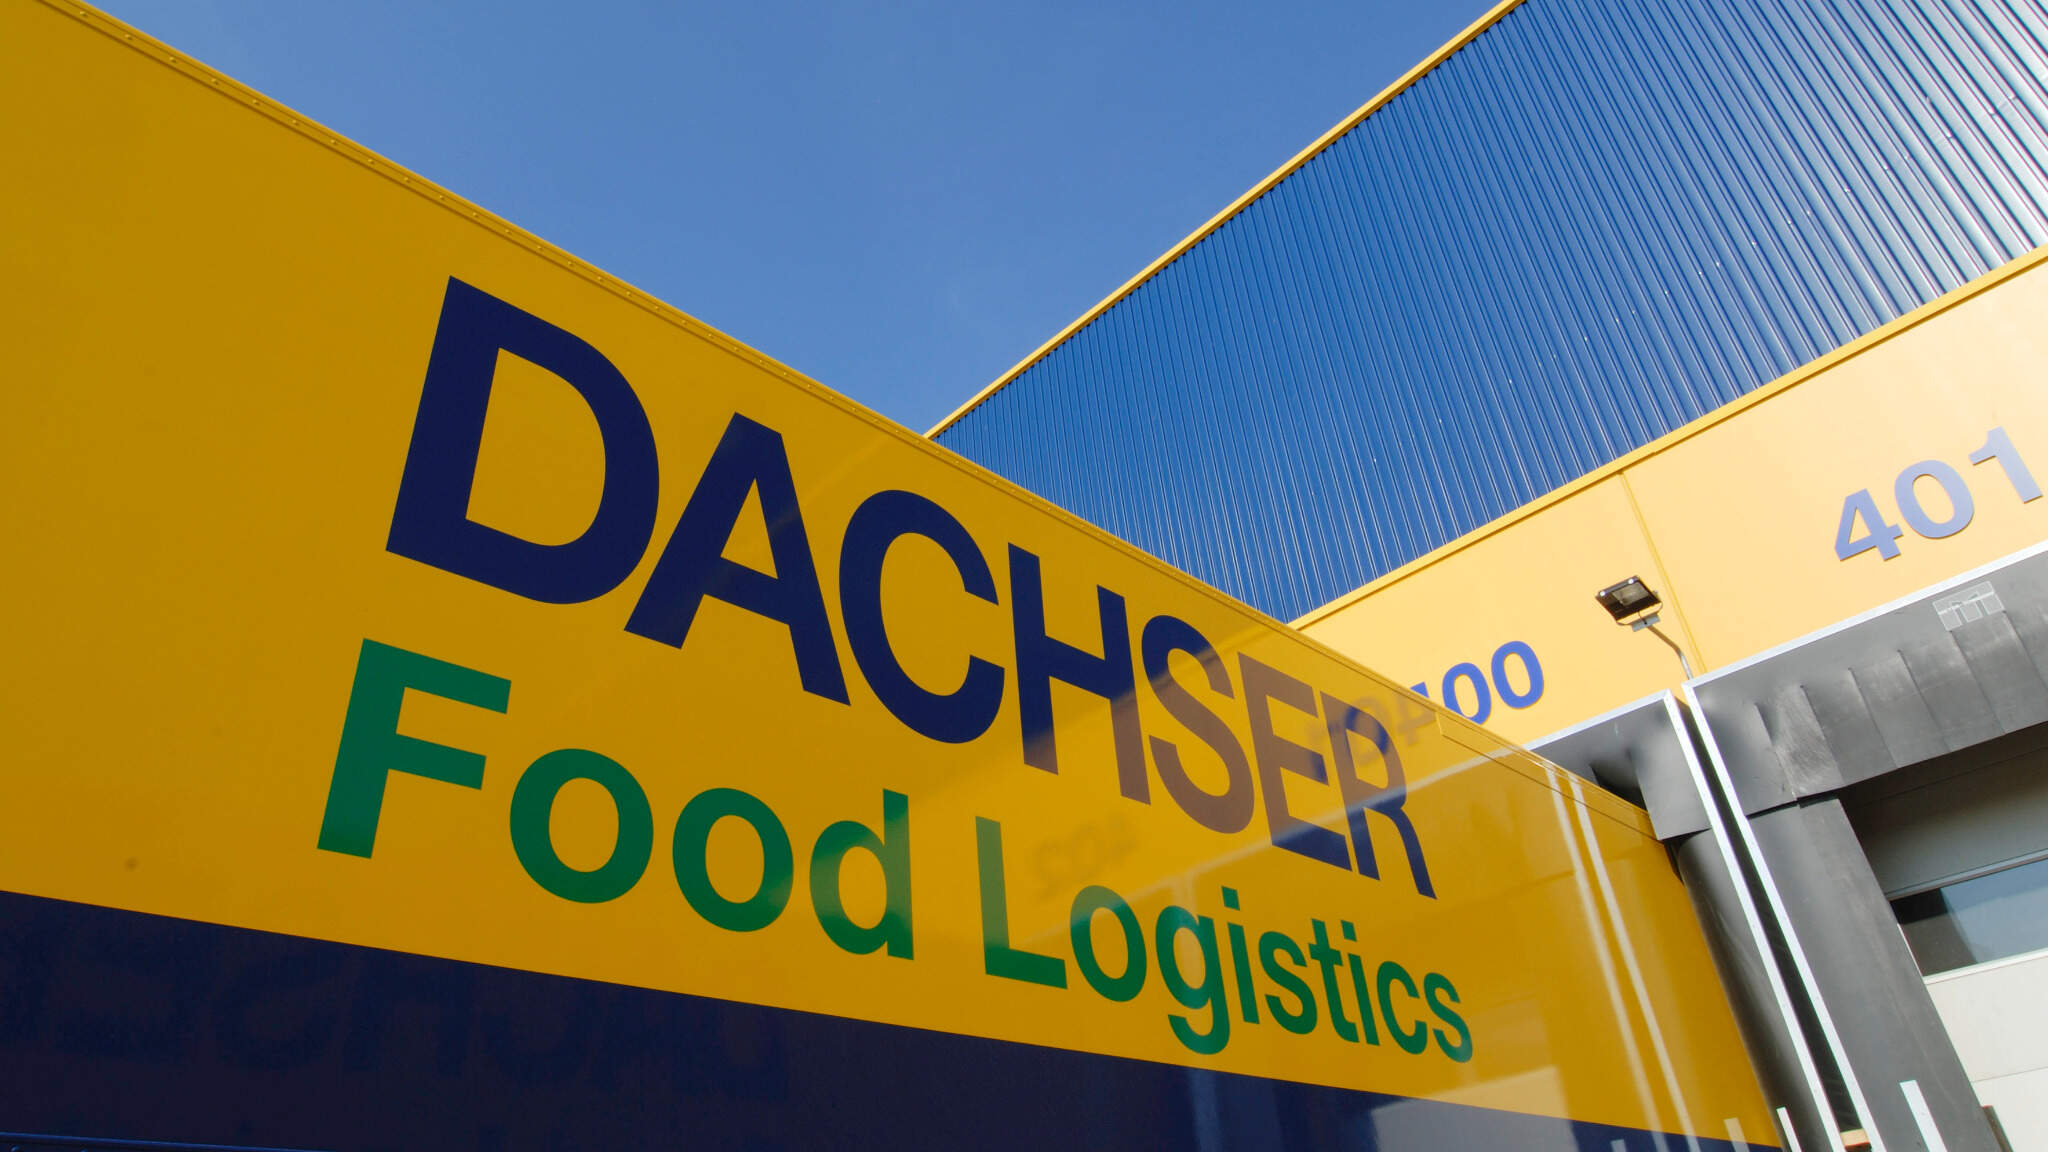 DACHSER Food Logistics erweitert sein Produktportfolio um einen „weekend service“.